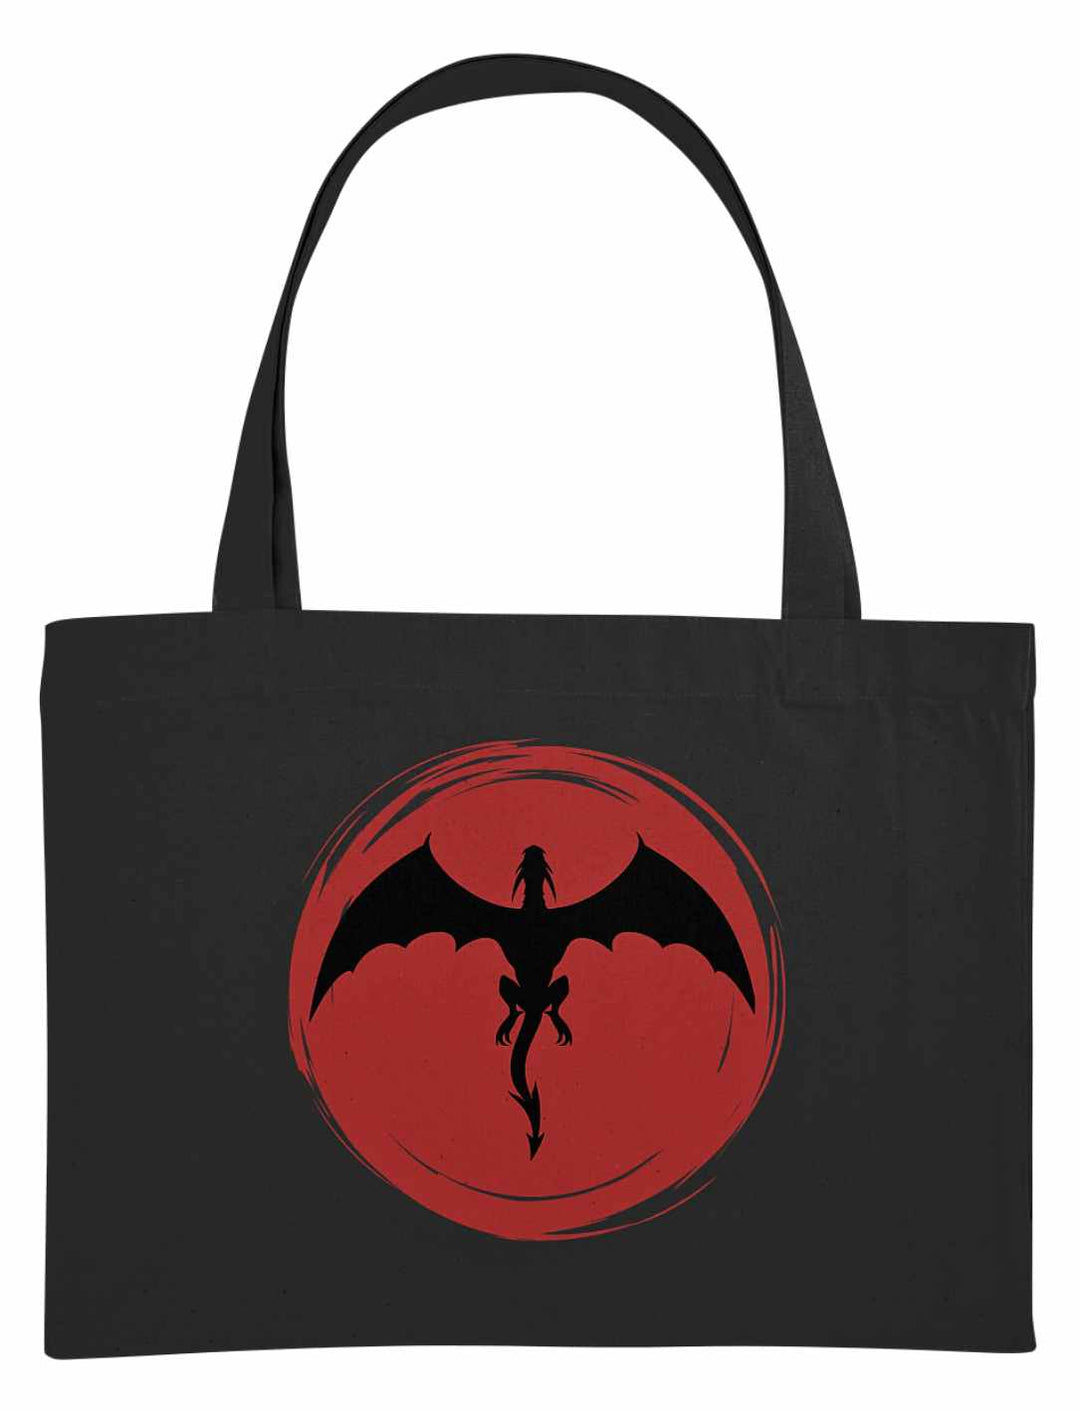 Schwarze 'Saga of the Dragon' Organic Shopping Bag aus recycelten Materialien, bereit, die Magie des Einkaufens zu entfachen.